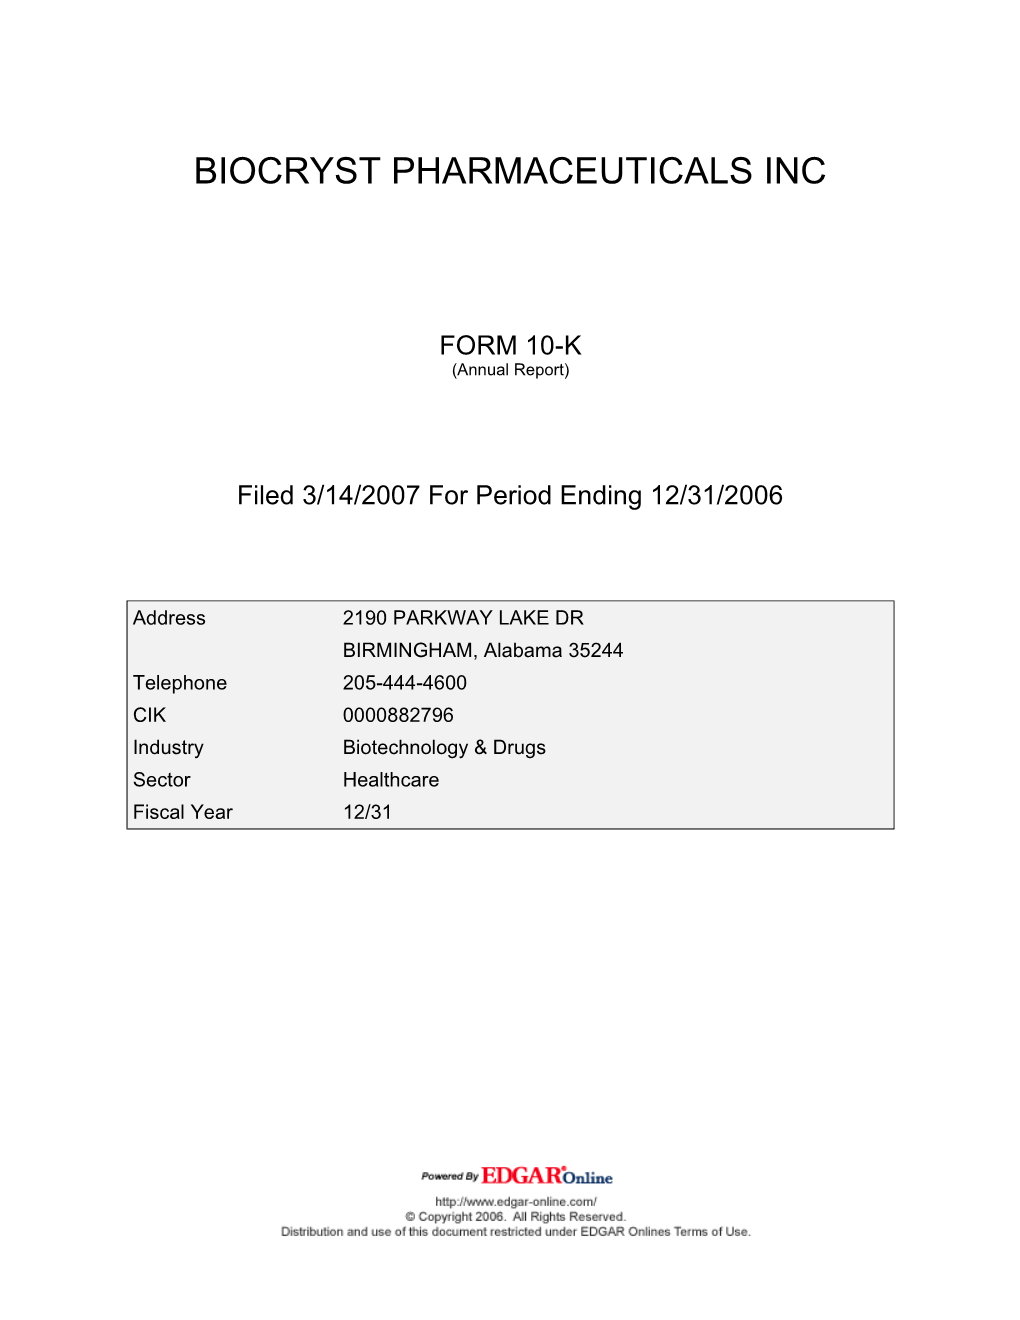 Biocryst Pharmaceuticals Inc